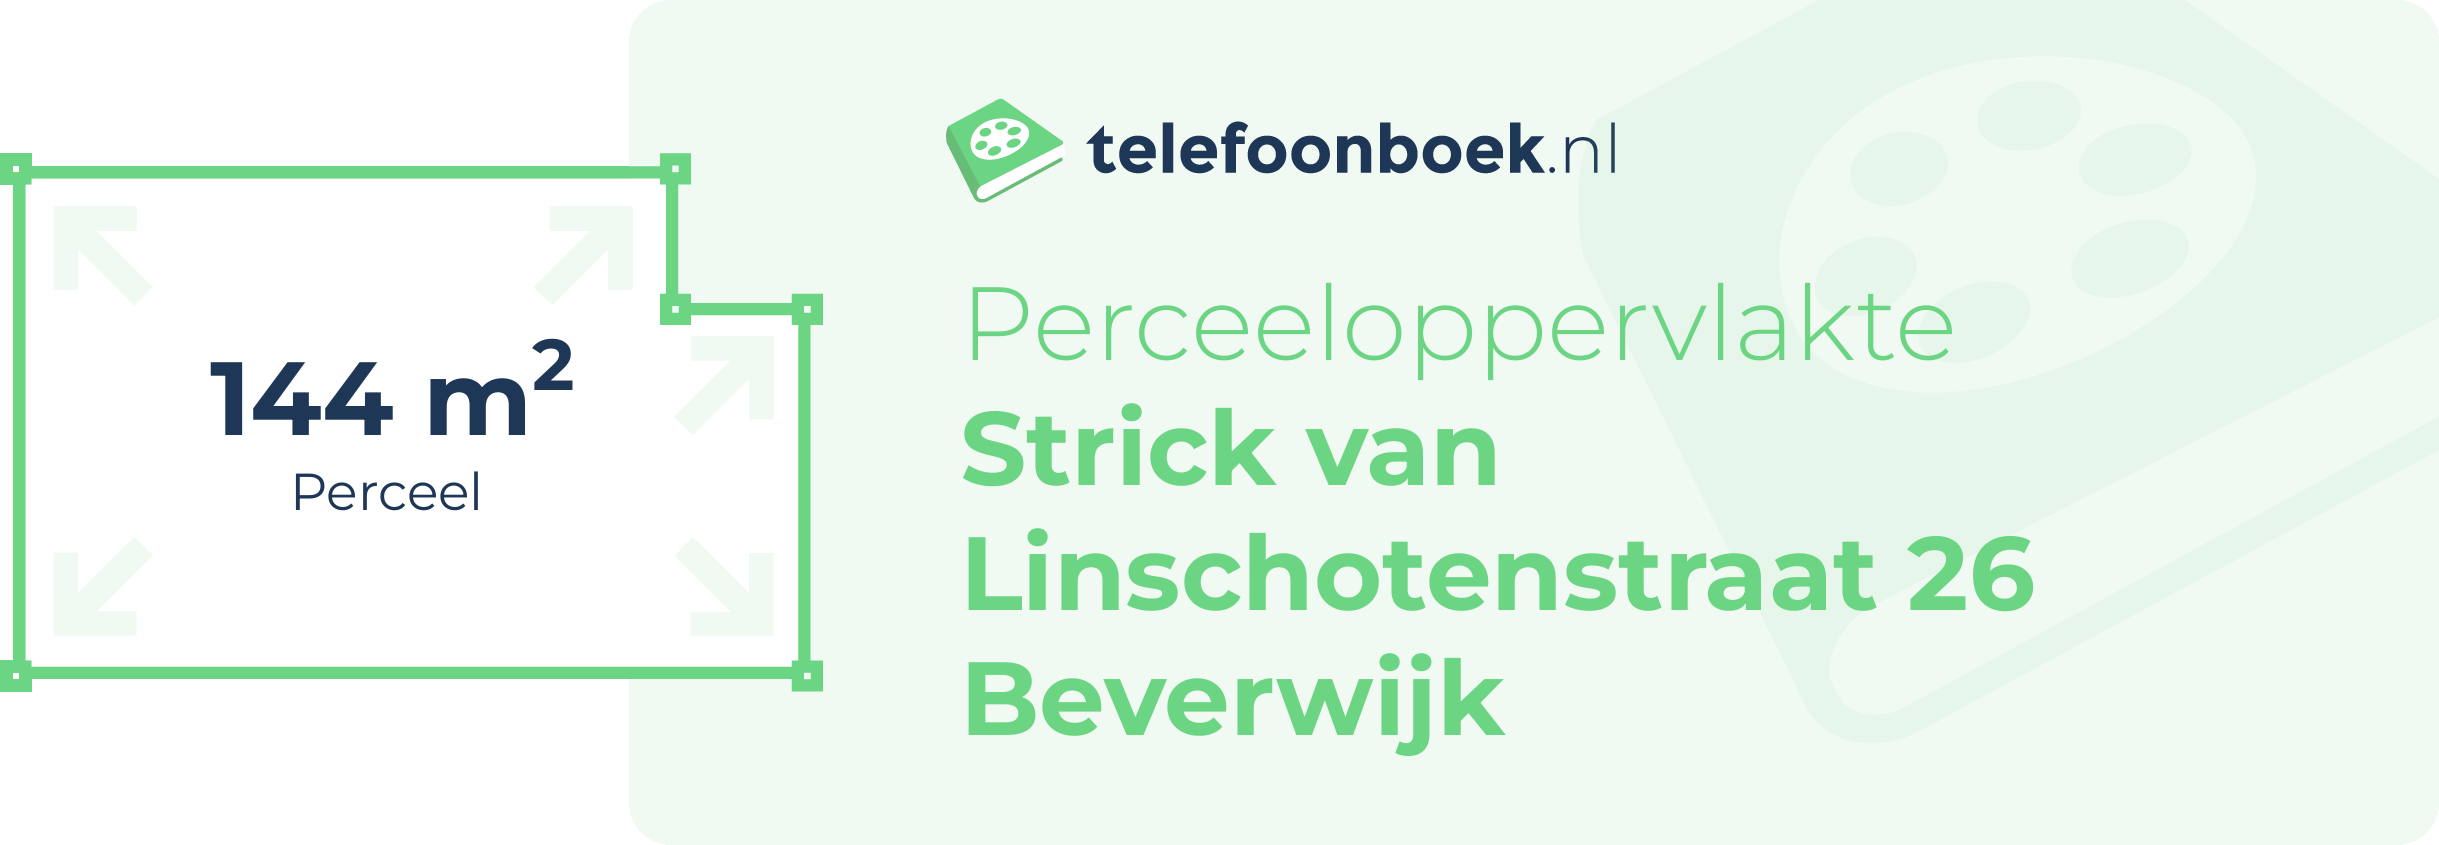 Perceeloppervlakte Strick Van Linschotenstraat 26 Beverwijk